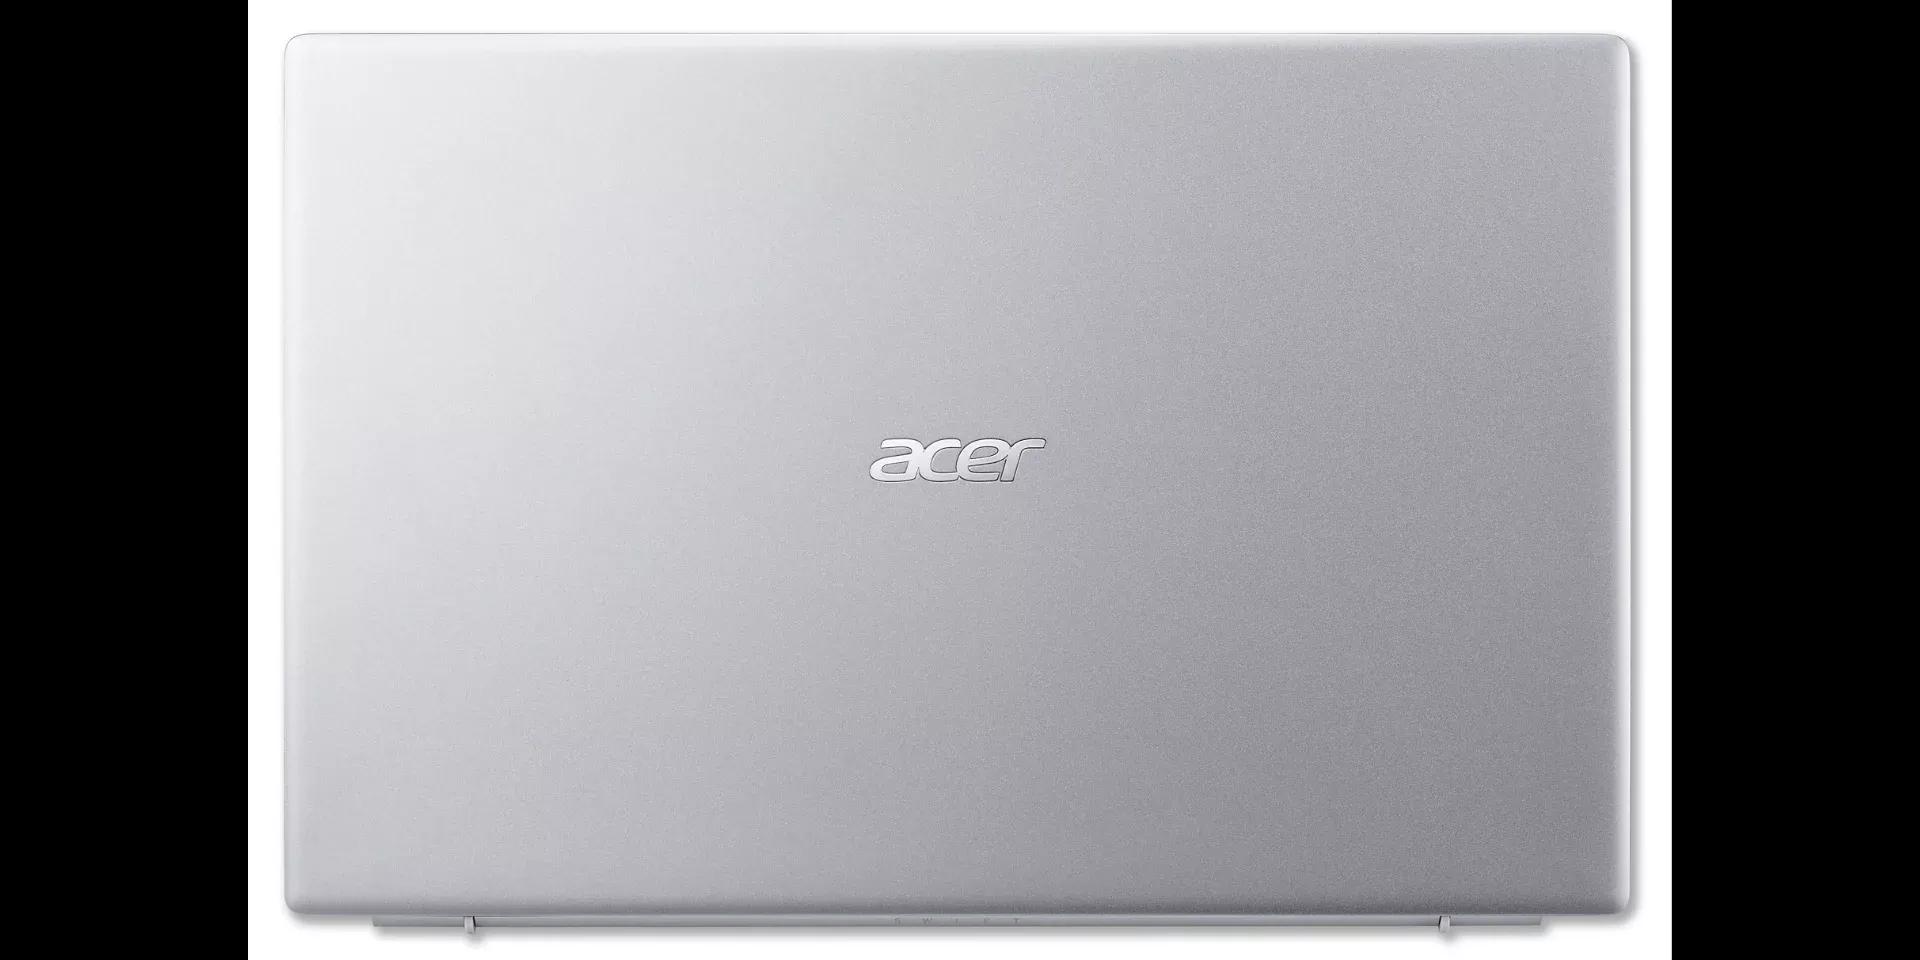 Acer Swift 3 2021 Ryzen 5 5500U | AMD Vega 8 | 8GB RAM | 256GB SSD | 14" FHD Display